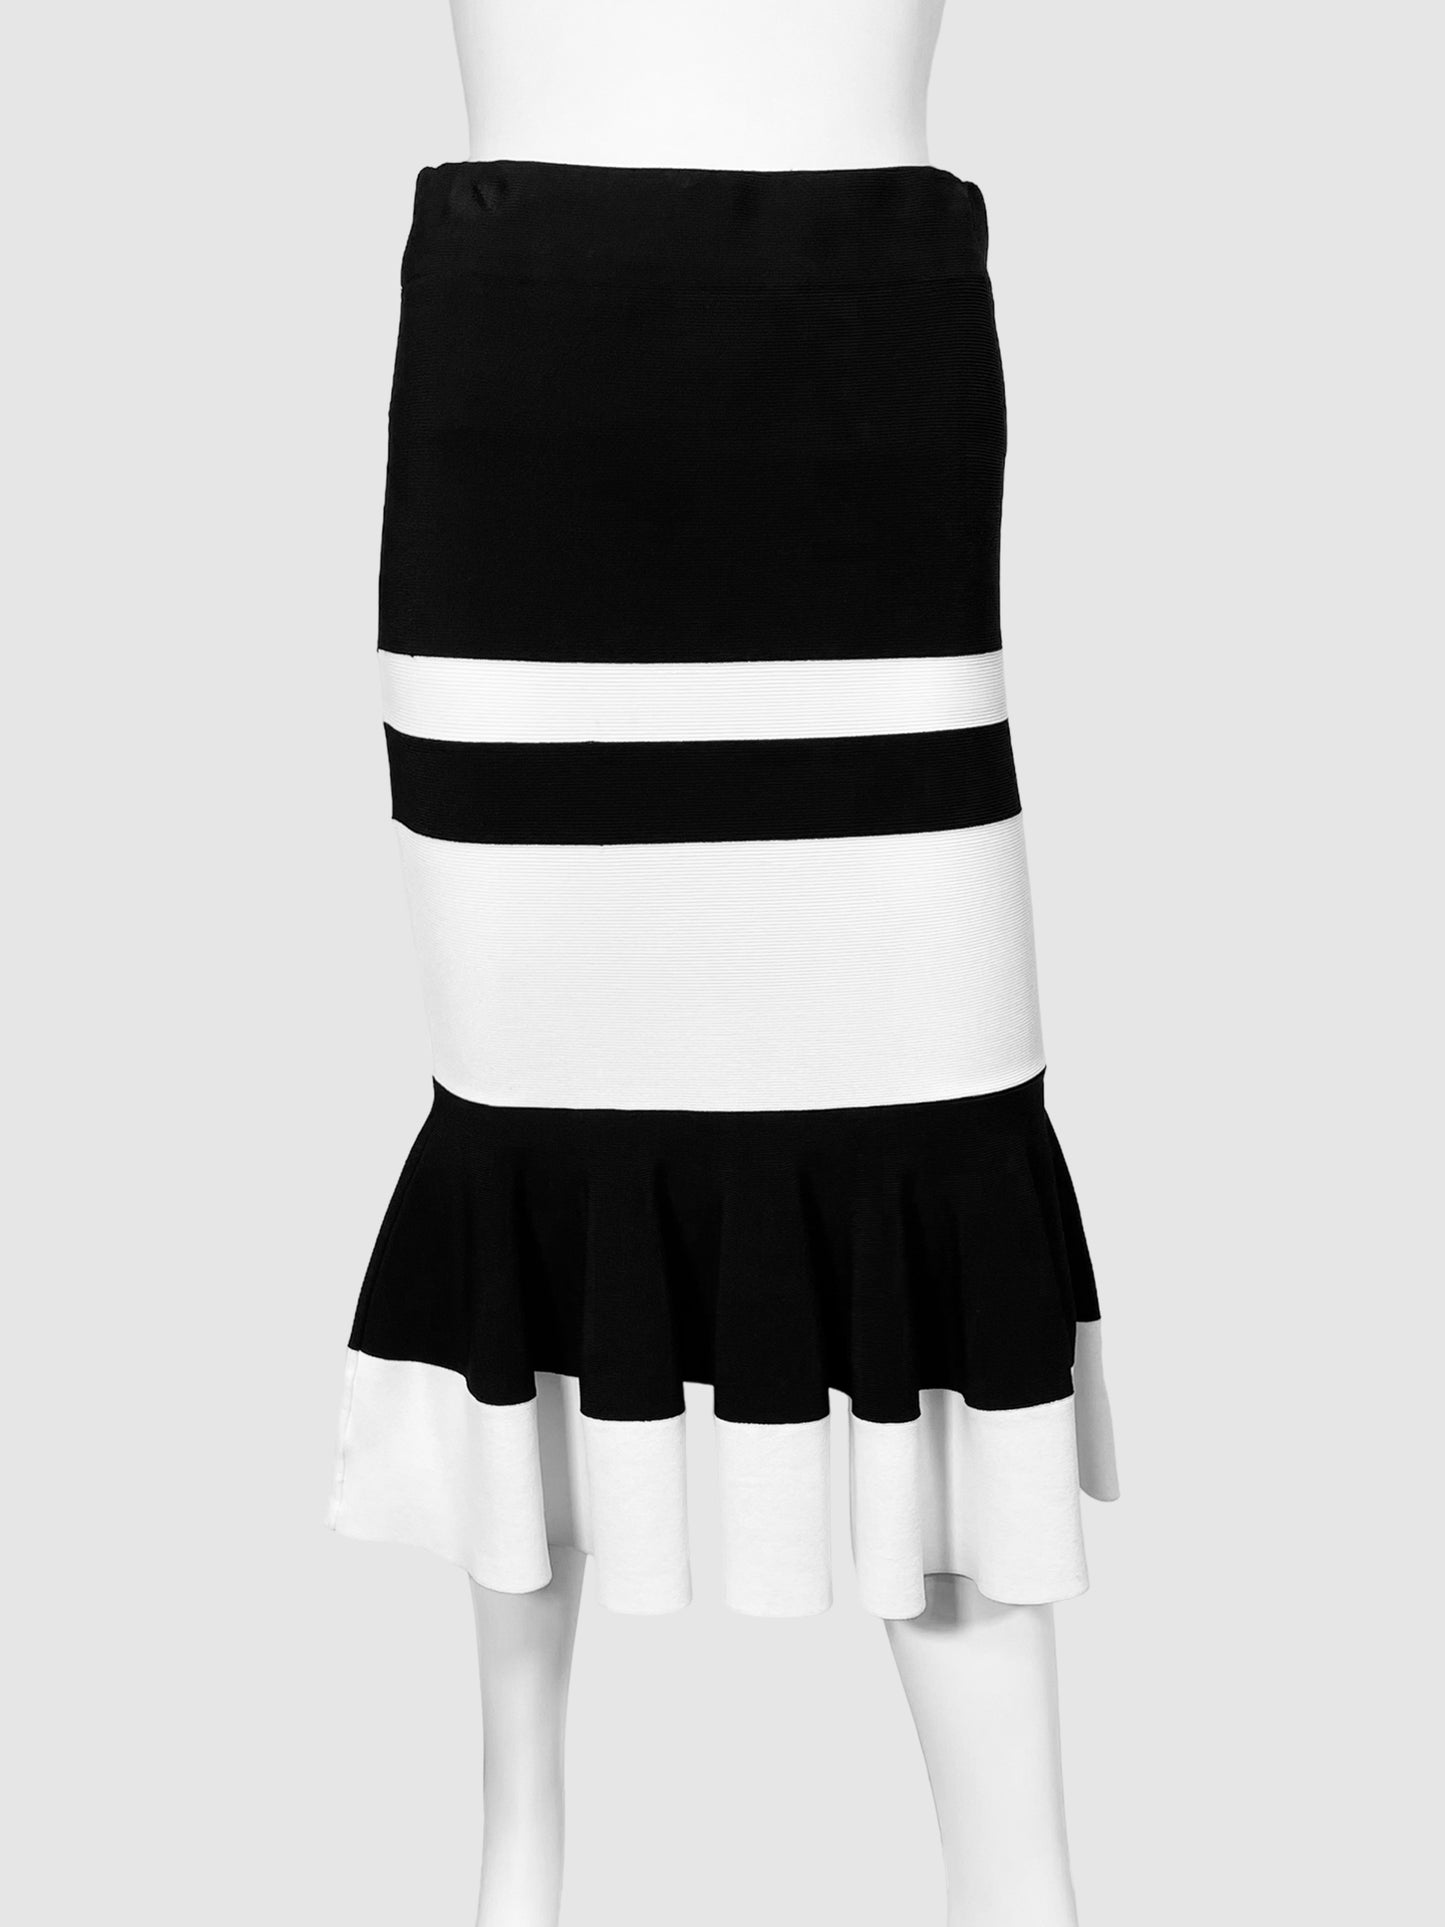 Jonathan Simkhai Long Sleeve Two Piece Skirt Set - Size Small